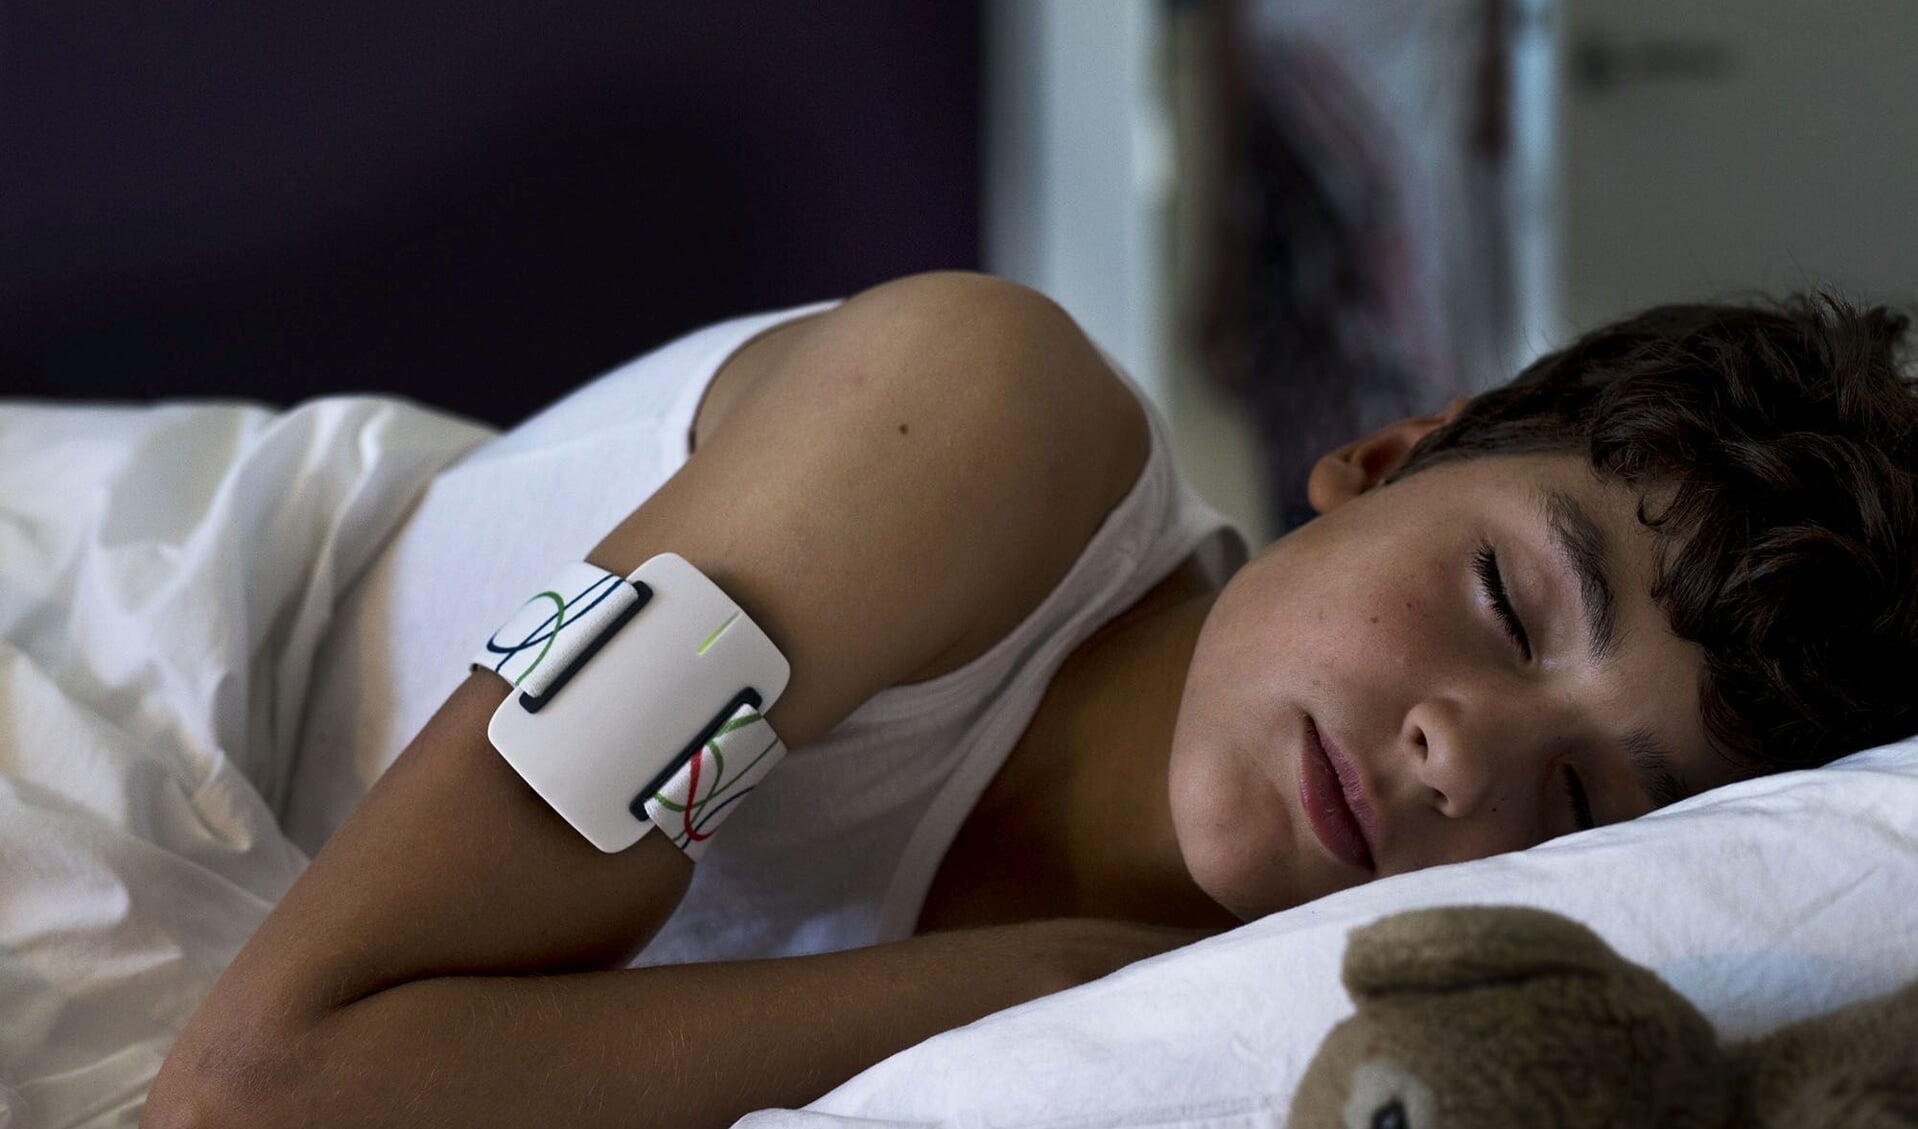 De Nightwatch die aanvallen van epilepsie kan herkennen en dan een waarschuwing uitstuurt, wordt als een armband gedragen.